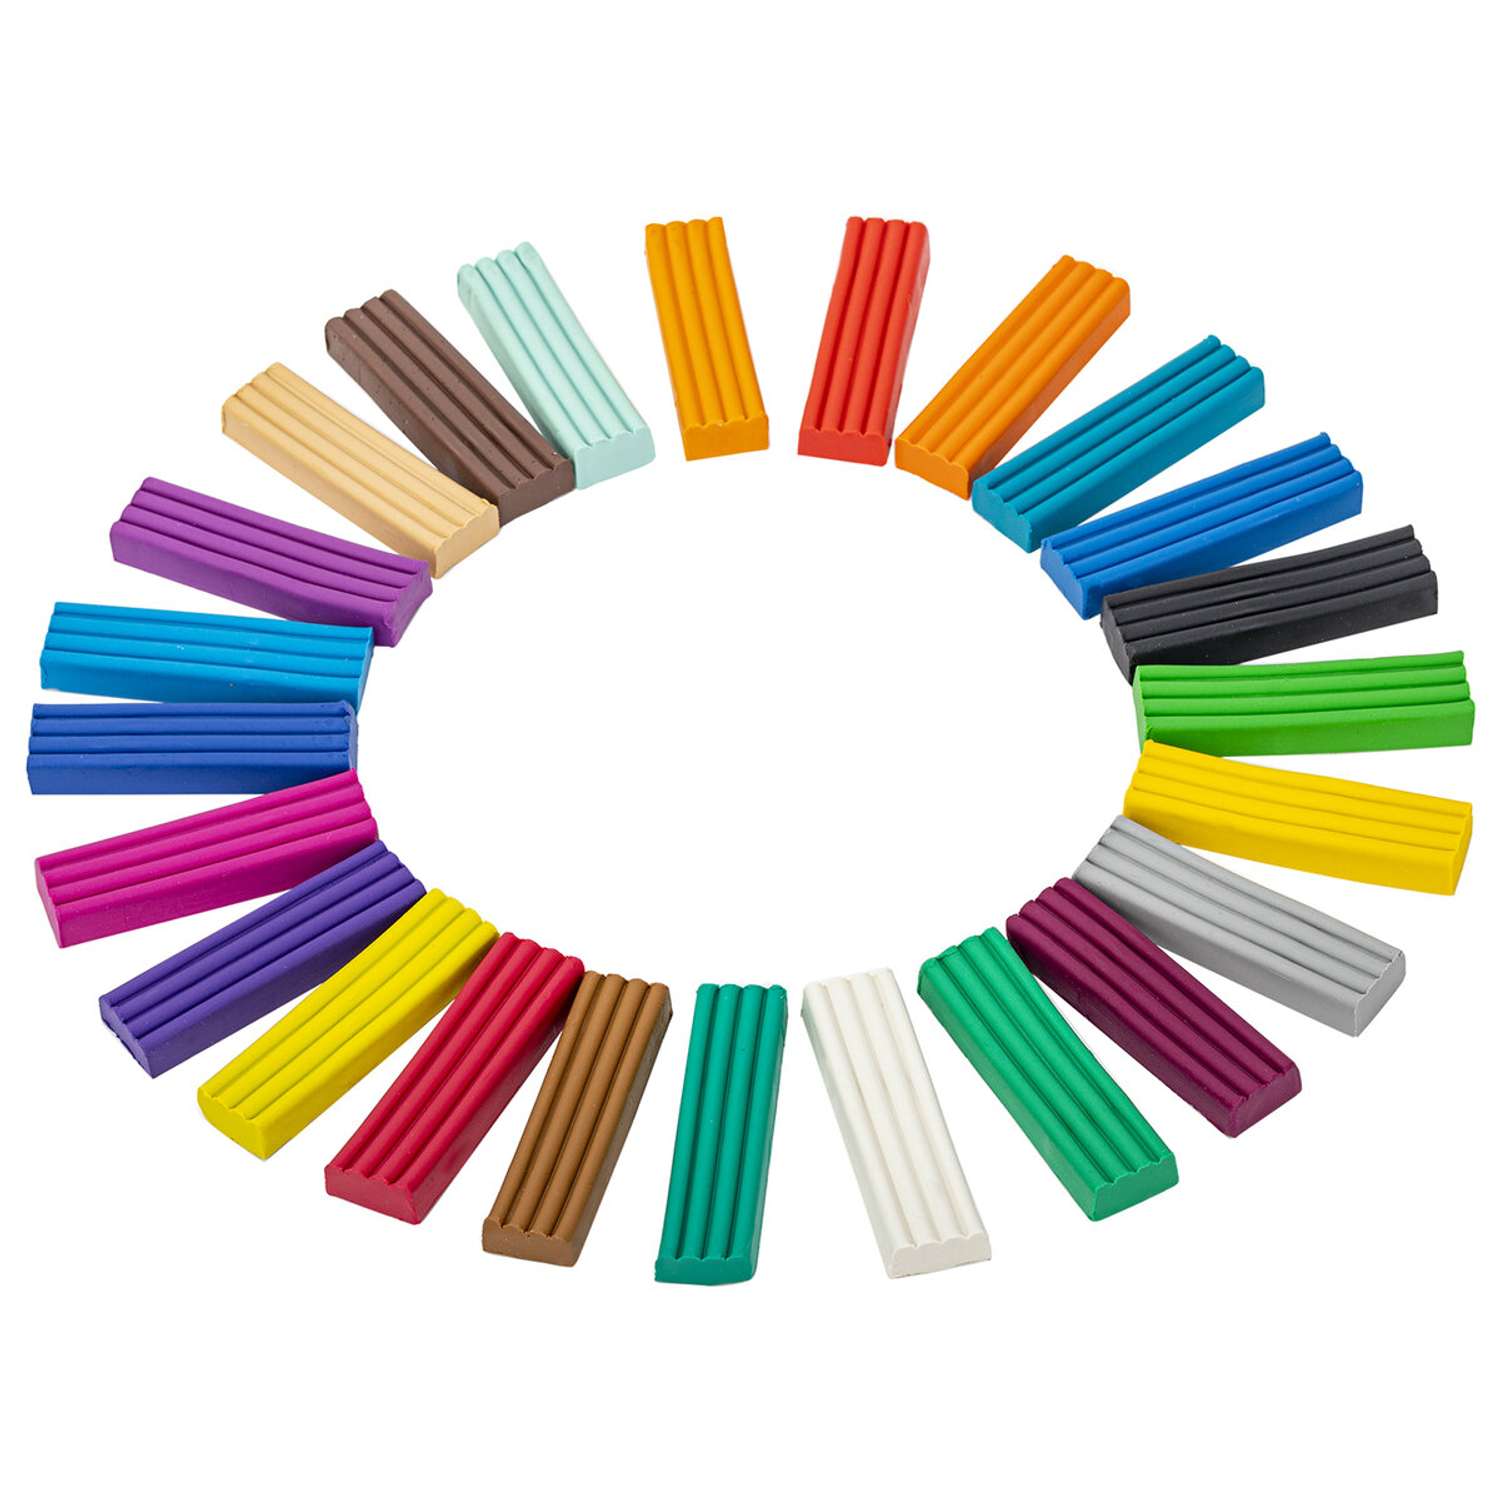 Пластилин классический Brauberg для лепки набор для детей 24 цвета - фото 3